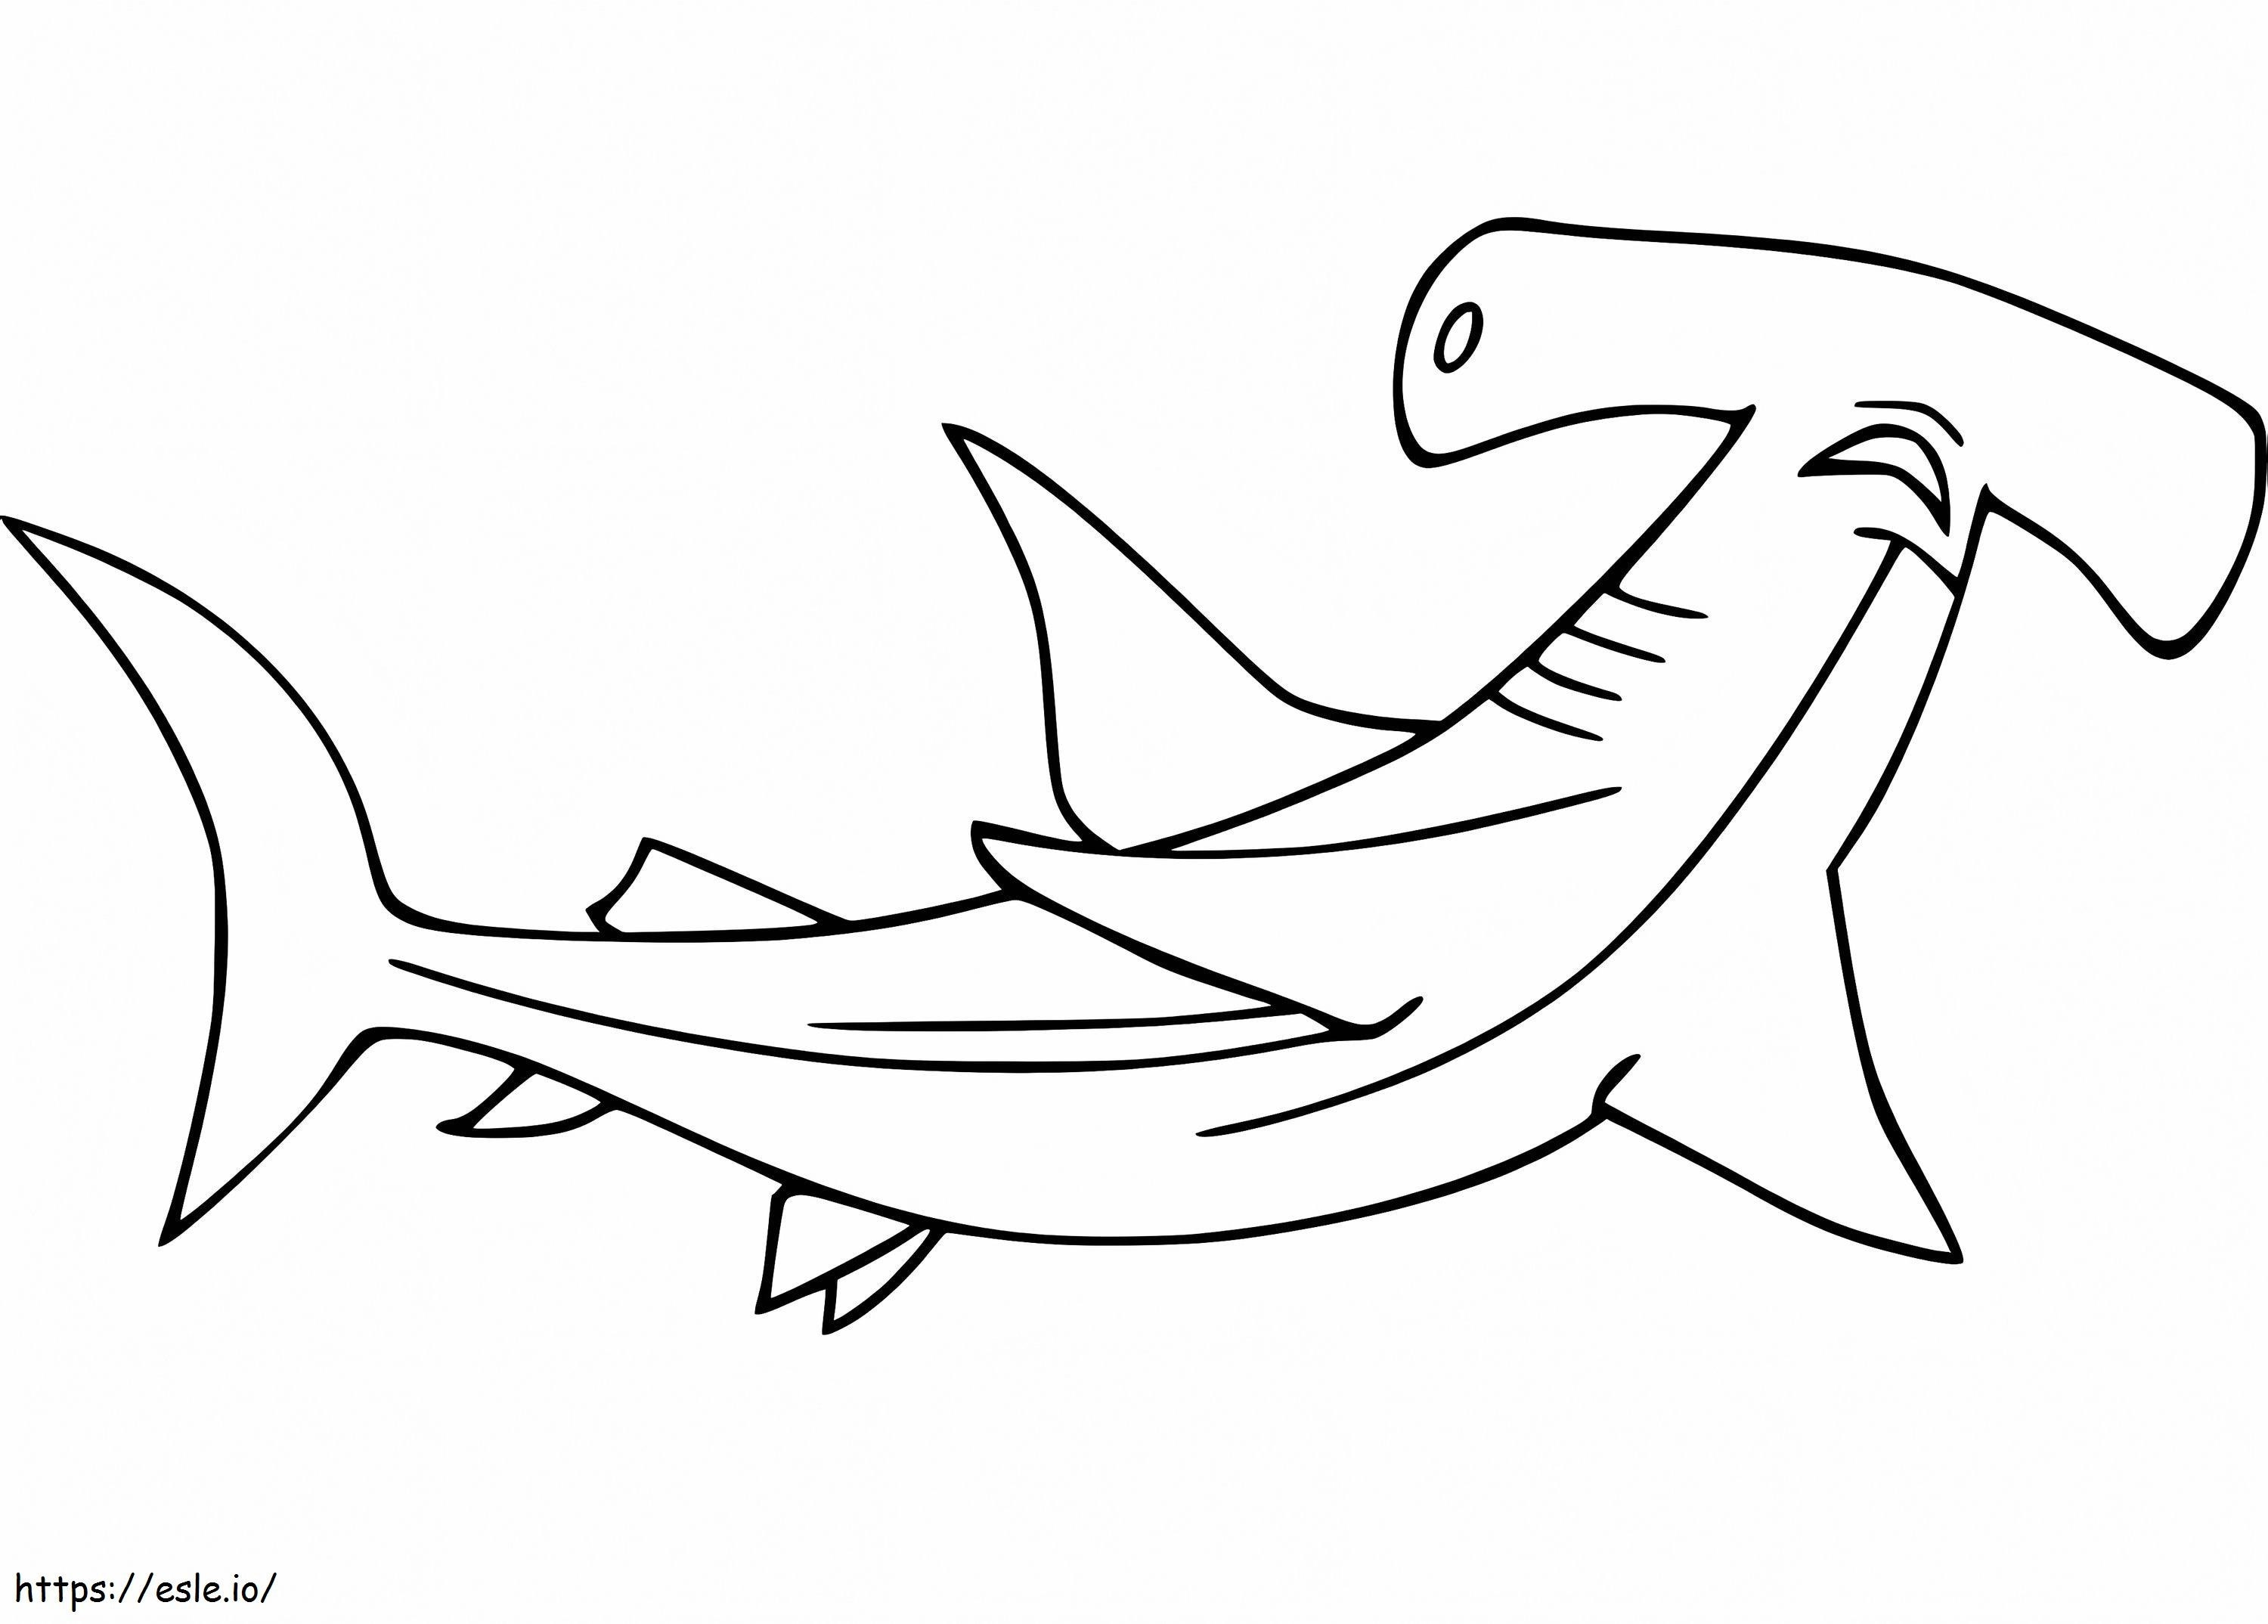 Uno squalo martello da colorare